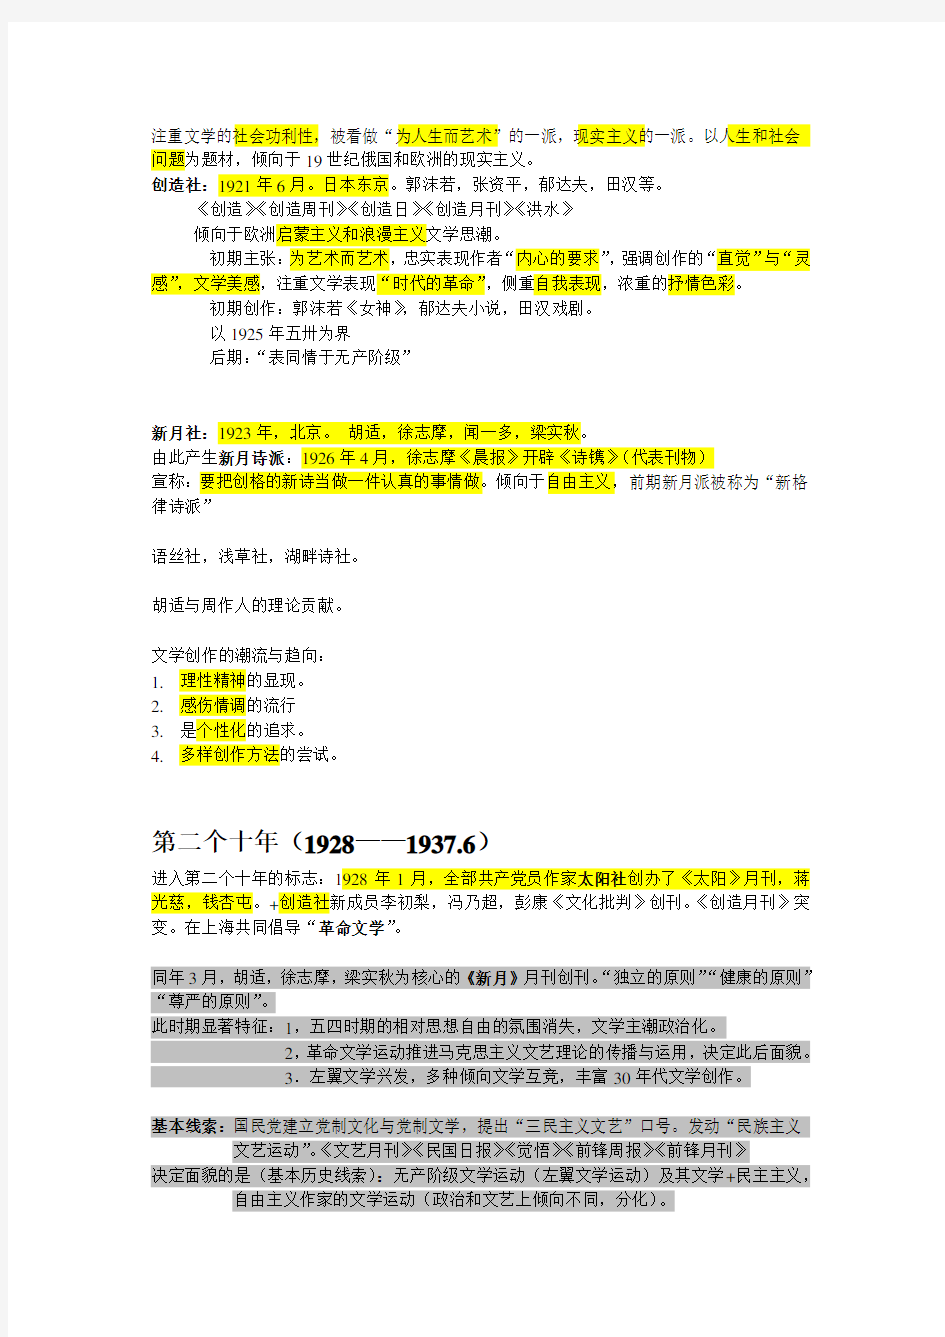 中国现代文学三十年(钱理群版)现当代文学文学考研笔记+最全名词解释+作家、代表作品分析